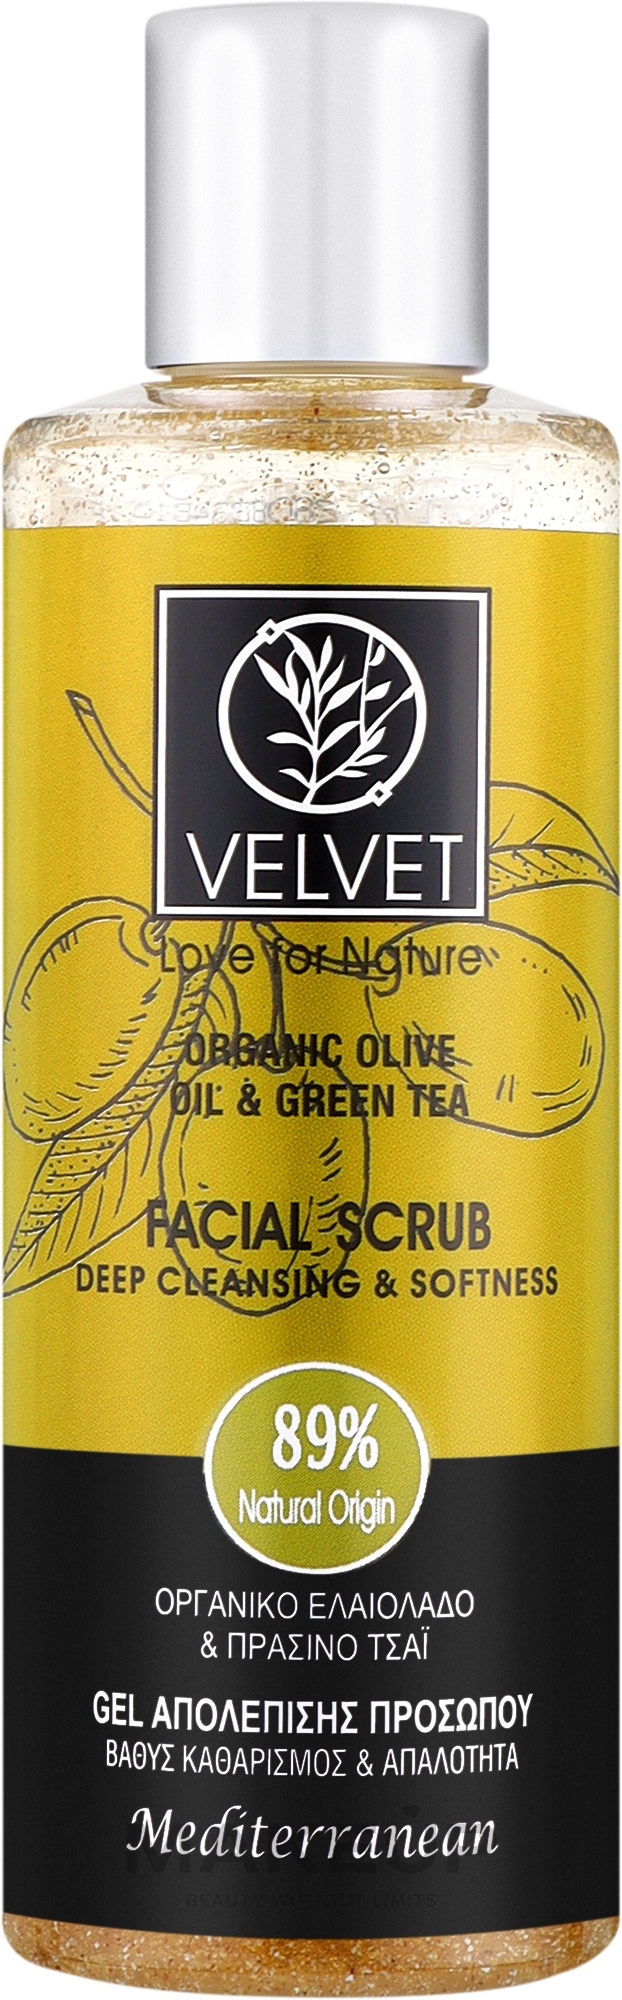 Скраб для обличчя - Velvet Love for Nature Organic Olive & Green Tea Face Scrub — фото 200ml